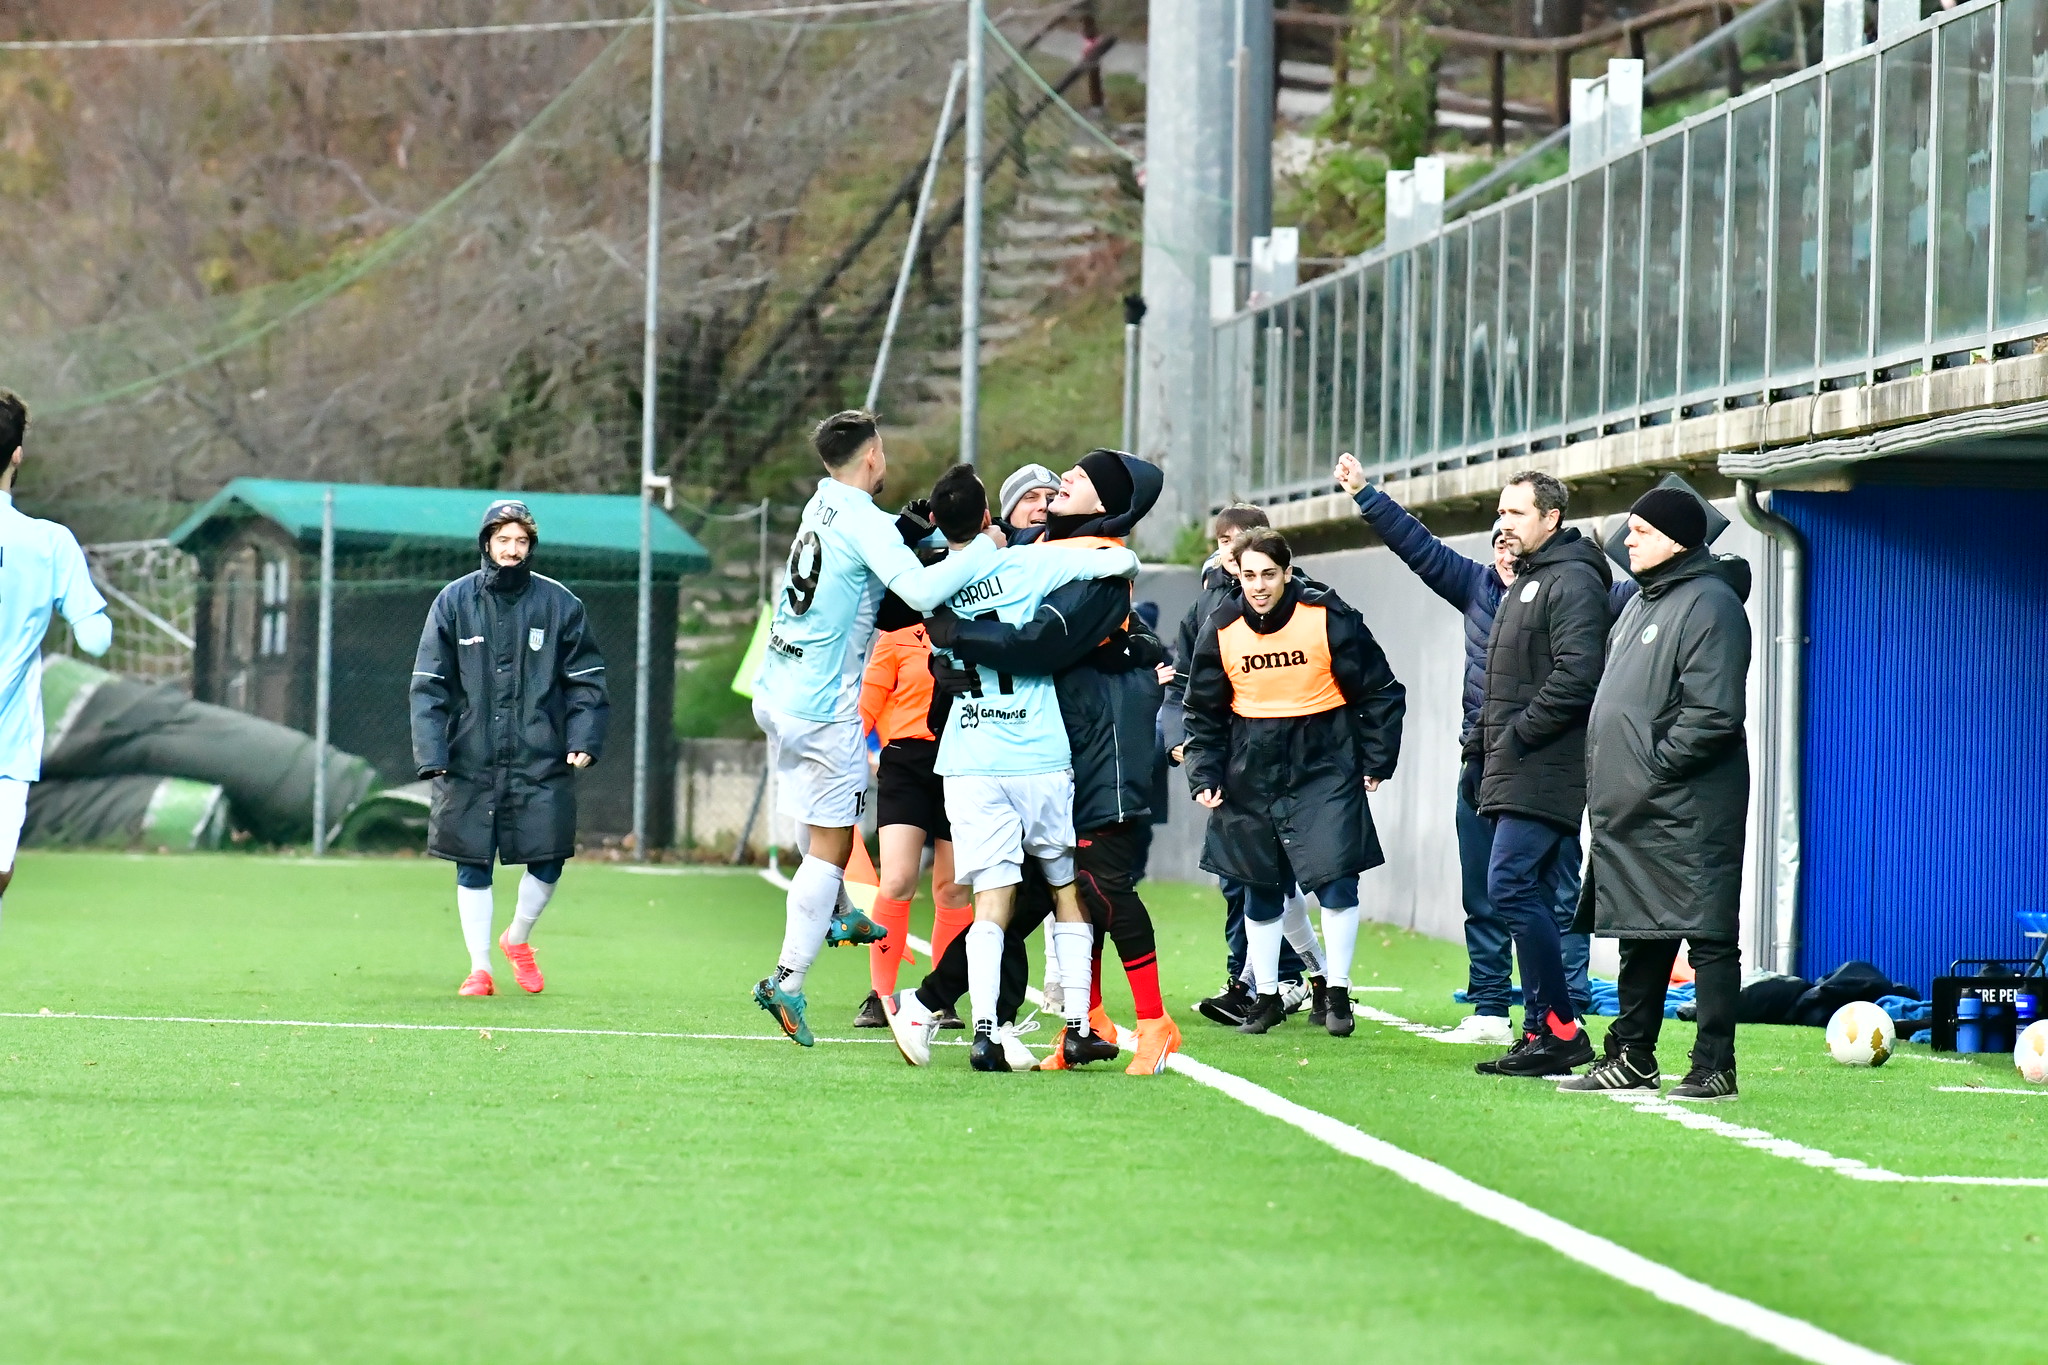 Calcio San Marino, il Tre Penne batte la Virtus in campionato e torna in scia scudetto